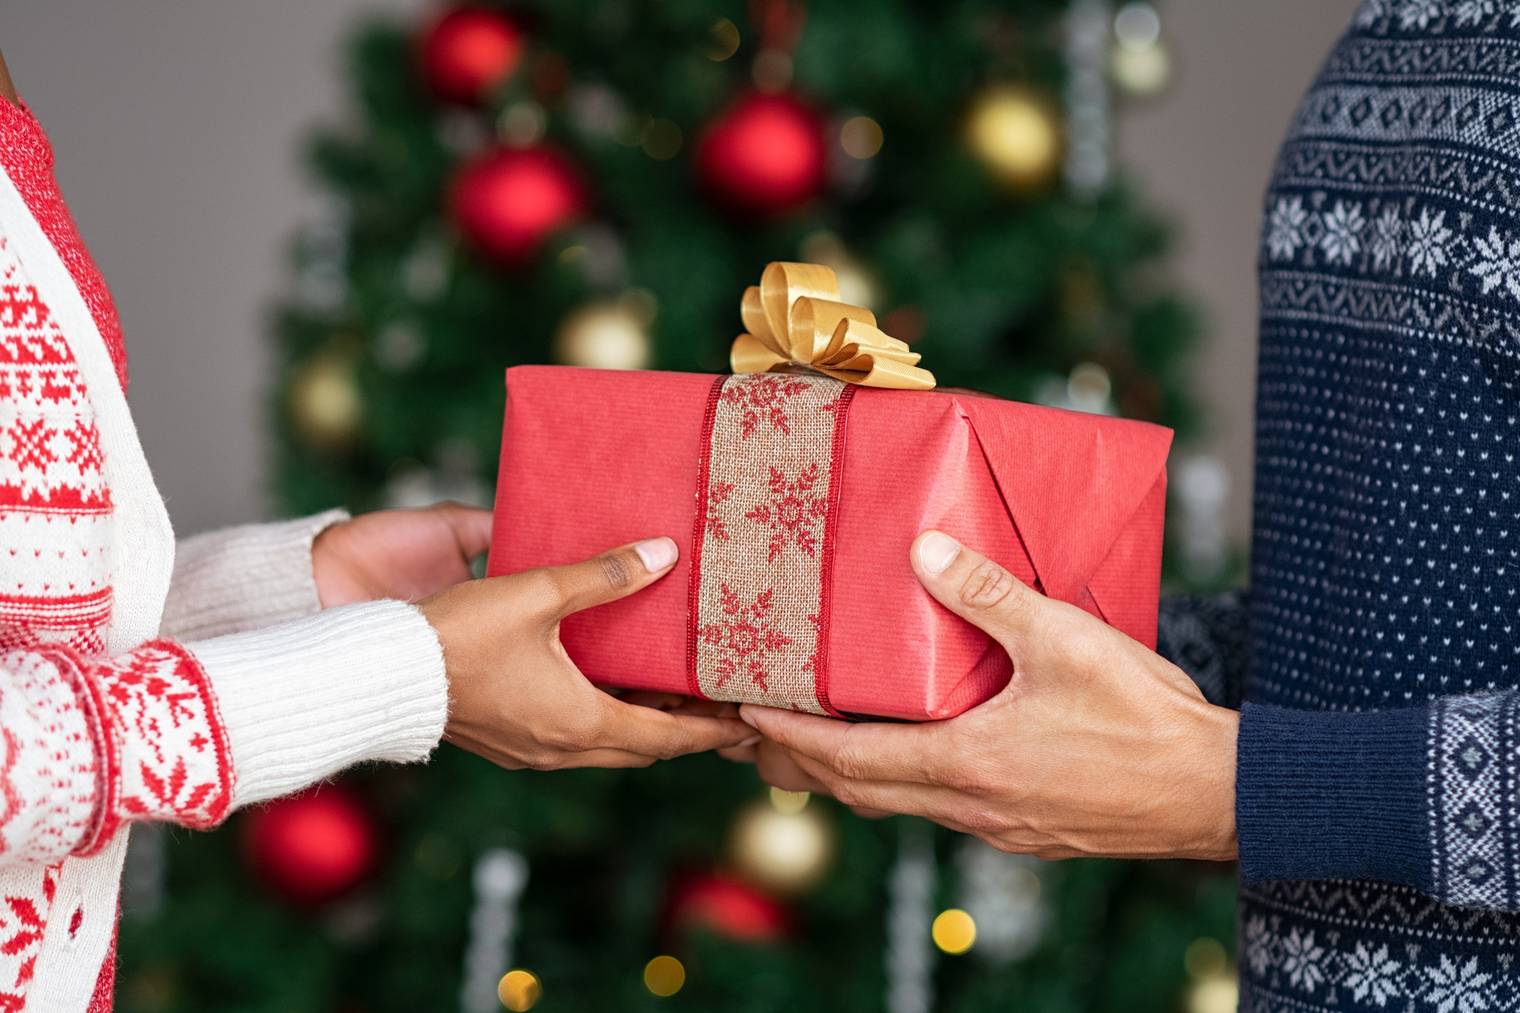 Eine schöne Geste: Das Geschenk jemandem schenken, der es brauchen kann.